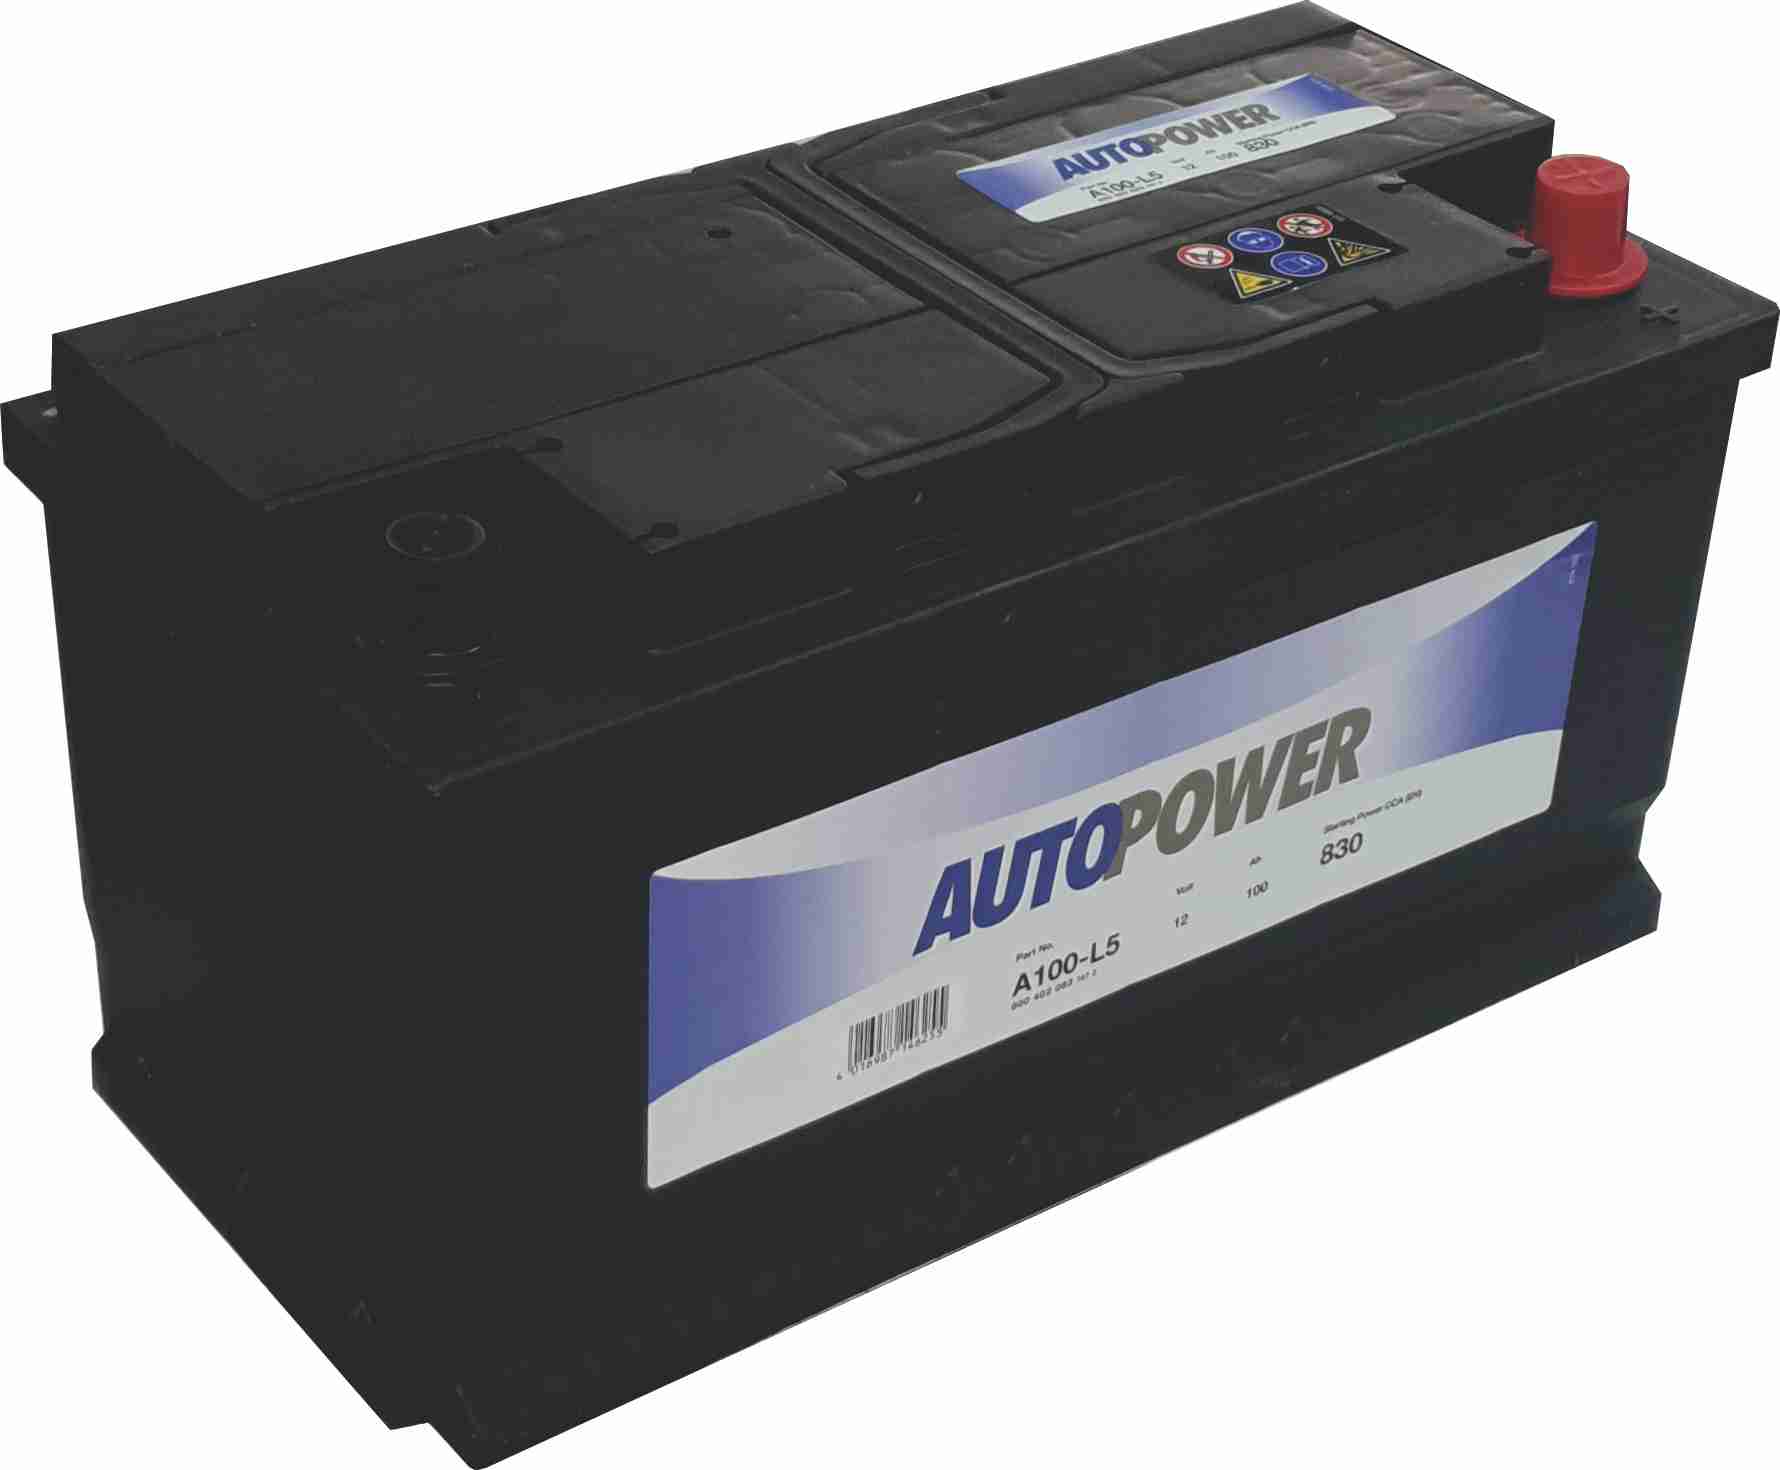 Auto Power A100-L5